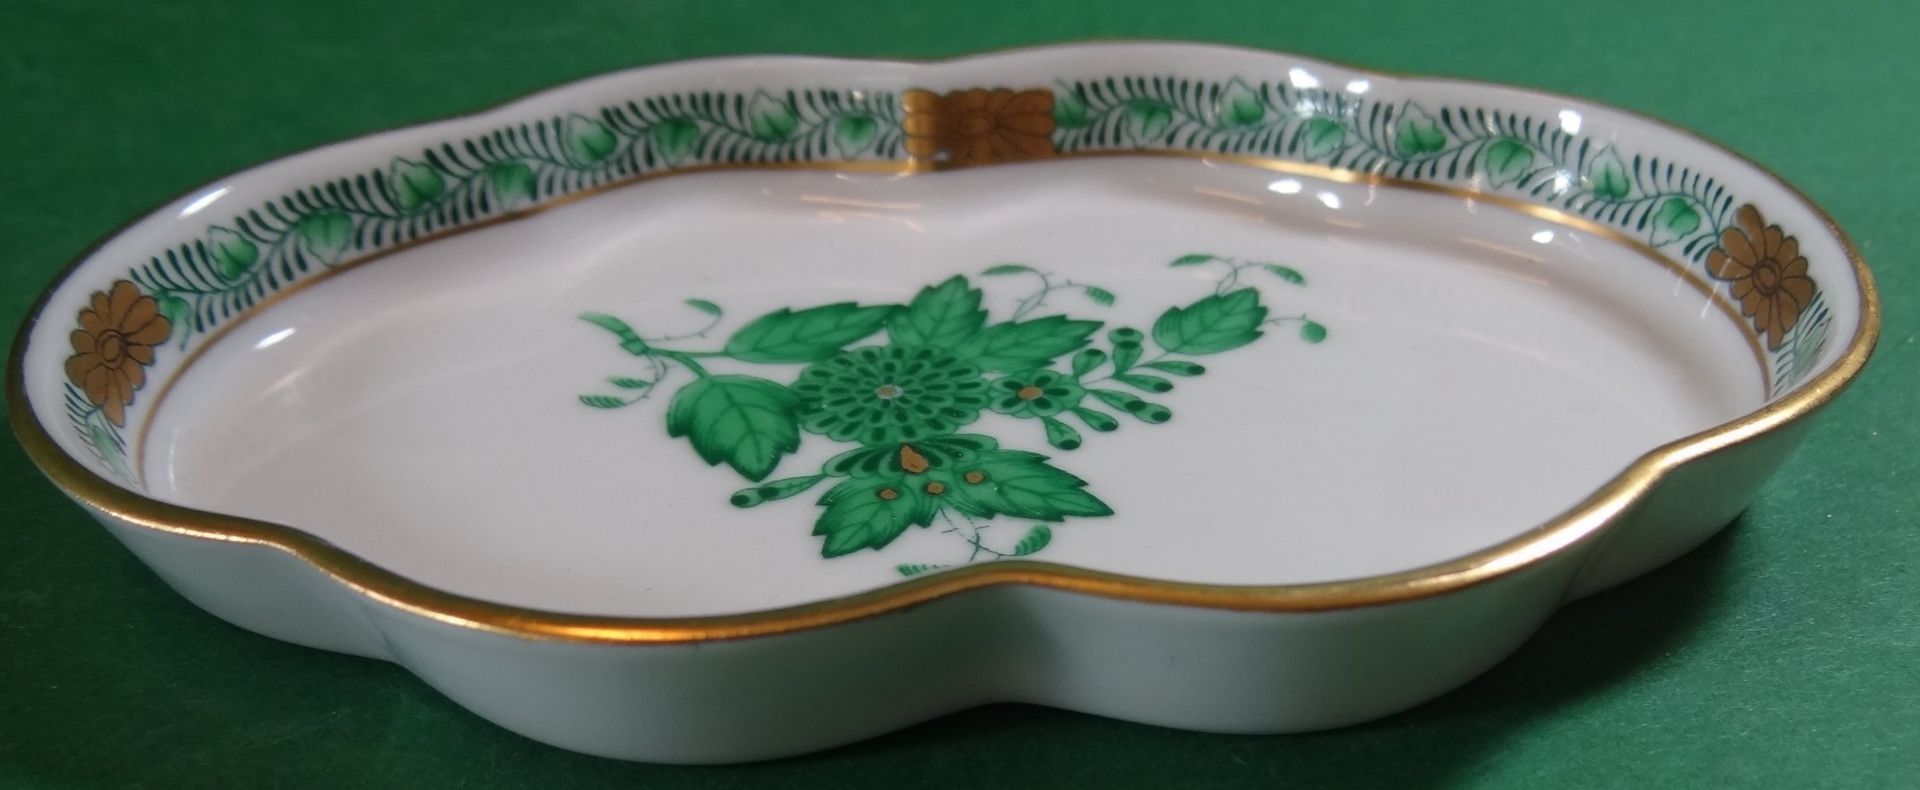 2 ovale Schalen "Herend" Apponyi grün, 13x9 cm - Bild 3 aus 4